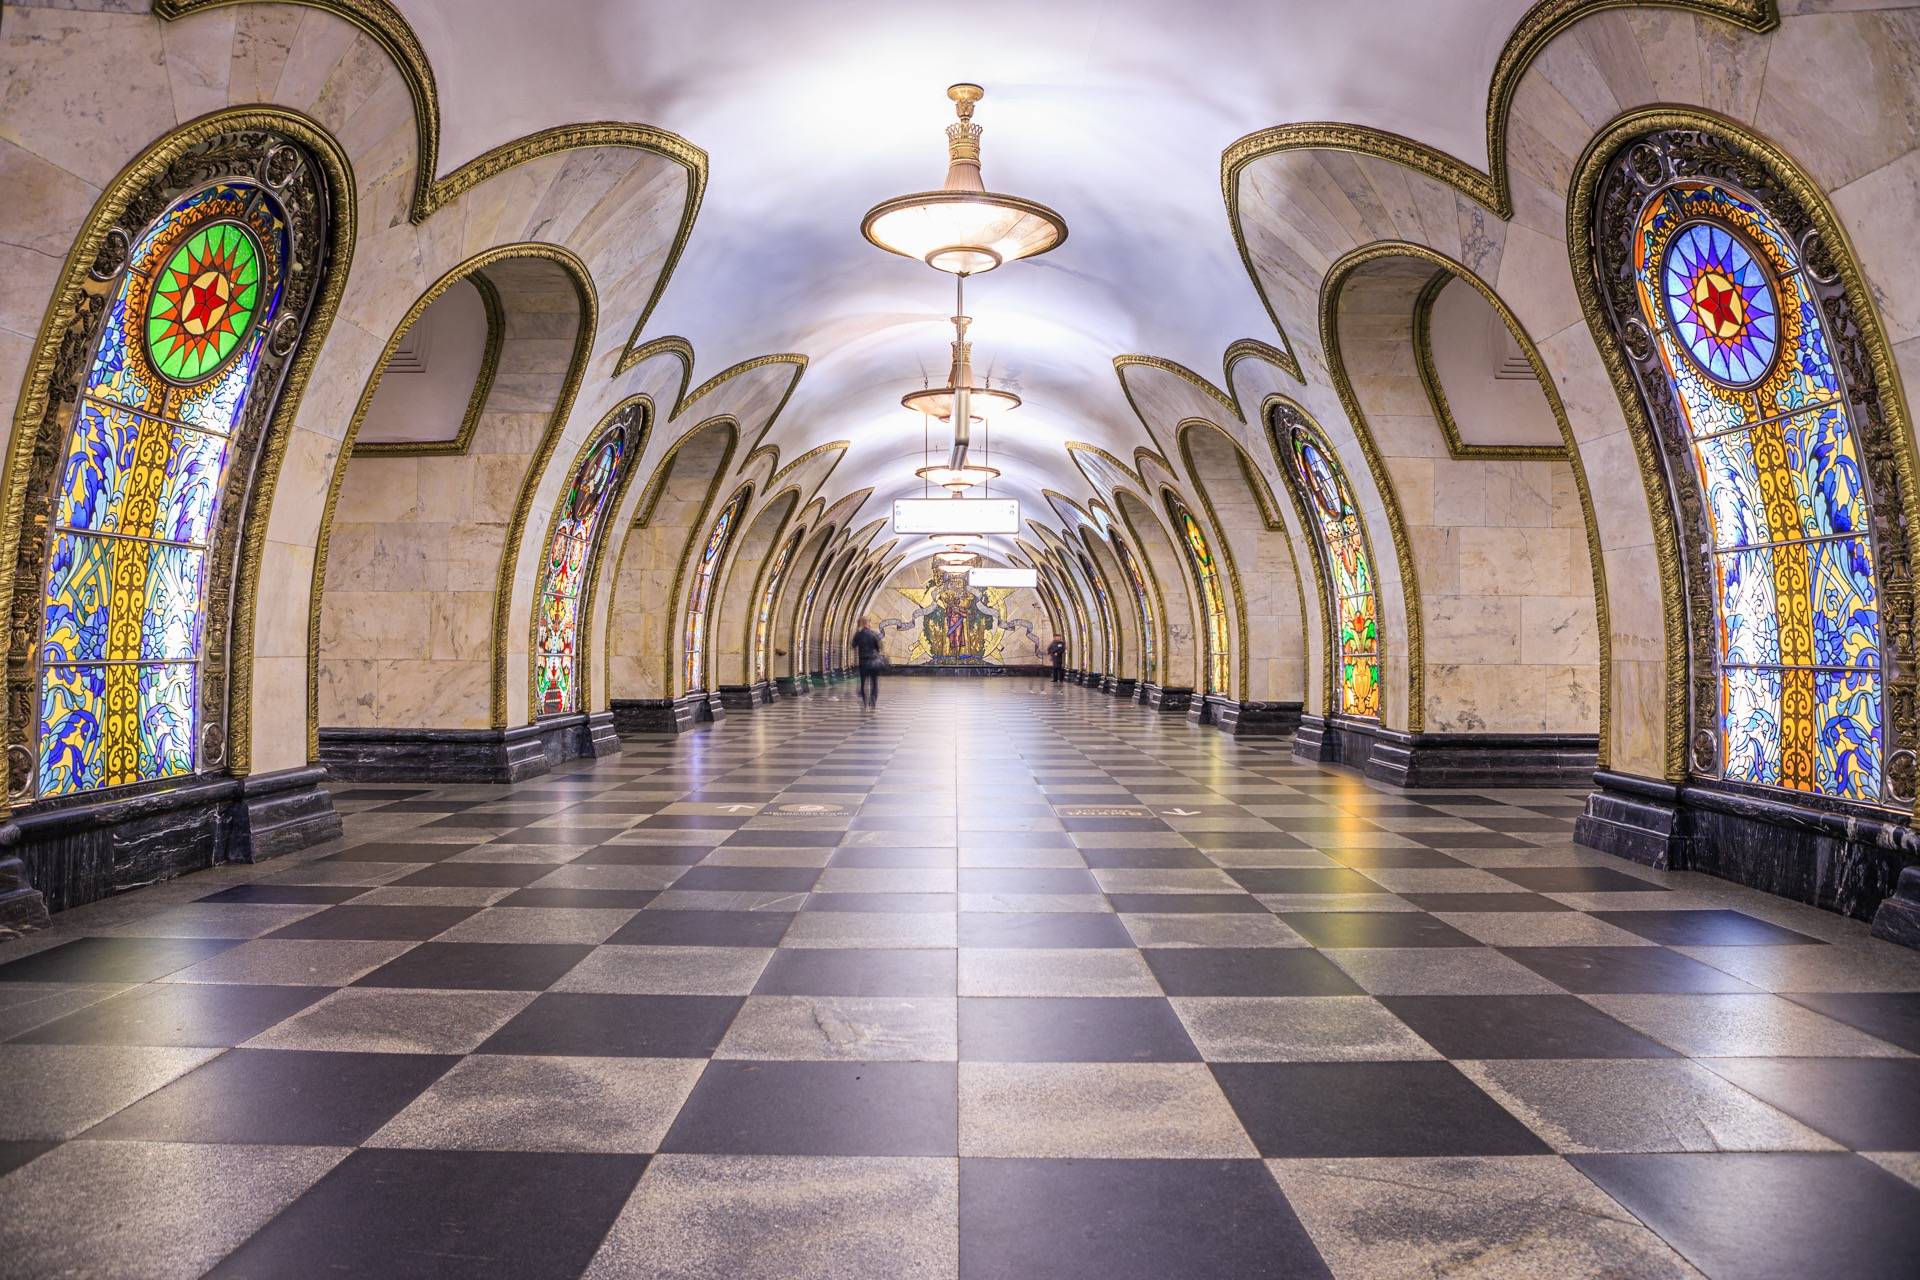 Moscow Metro Photo Tour - Part 3